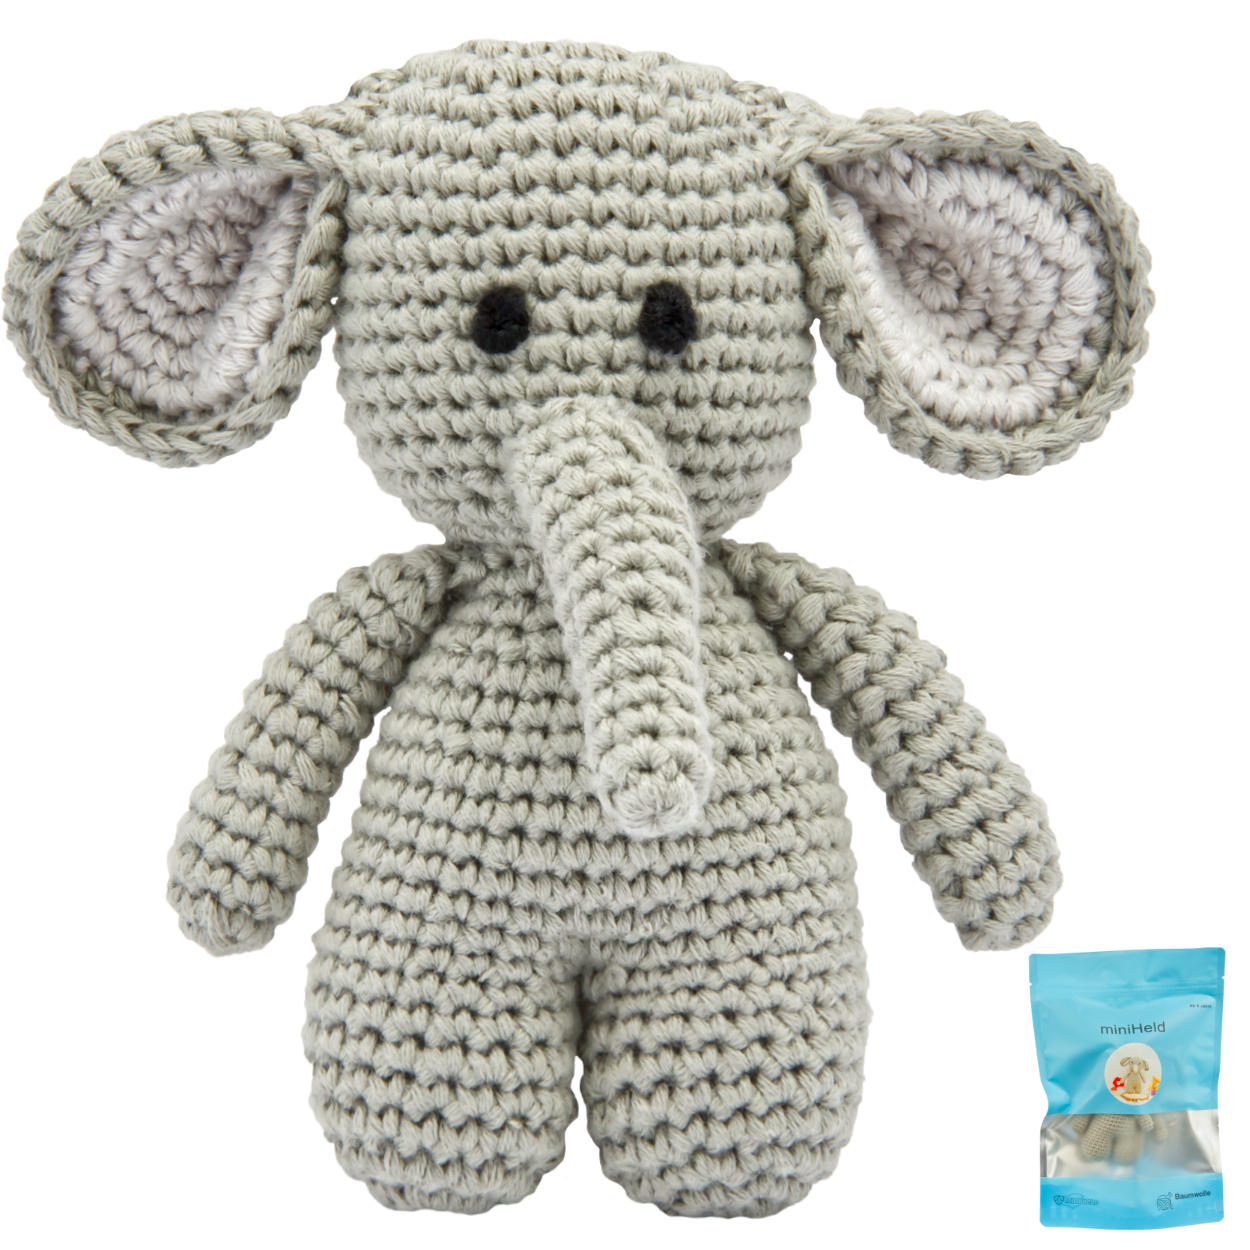 Handgestrickter Elefant gehäkelt aus Baumwolle Spielzeug 15 cm